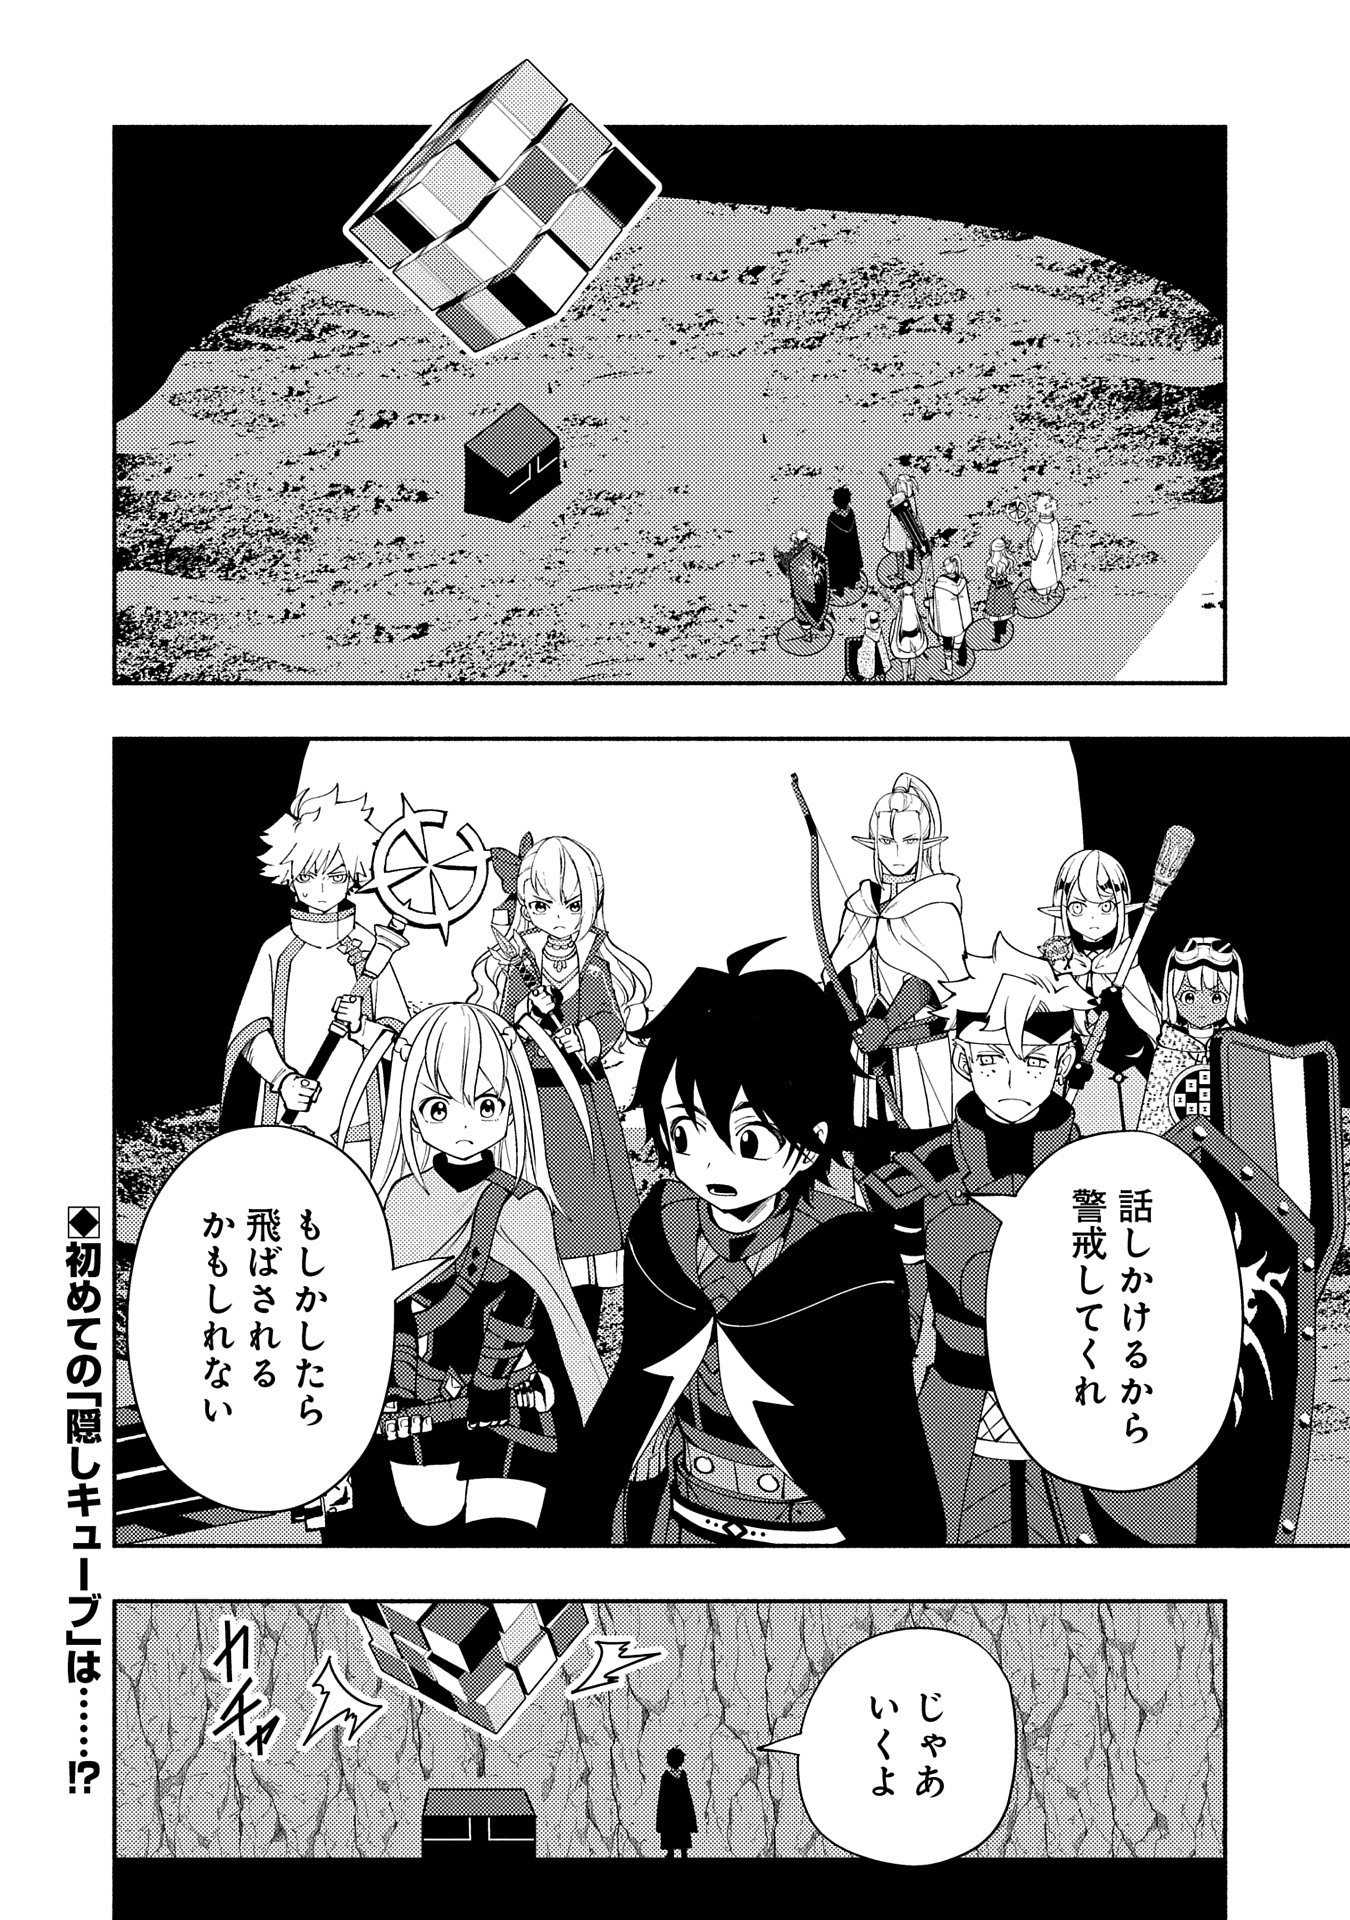 Hell Mode: Yarikomi Suki no Gamer wa Hai Settei no Isekai de Musou Suru - Chapter 59 - Page 26